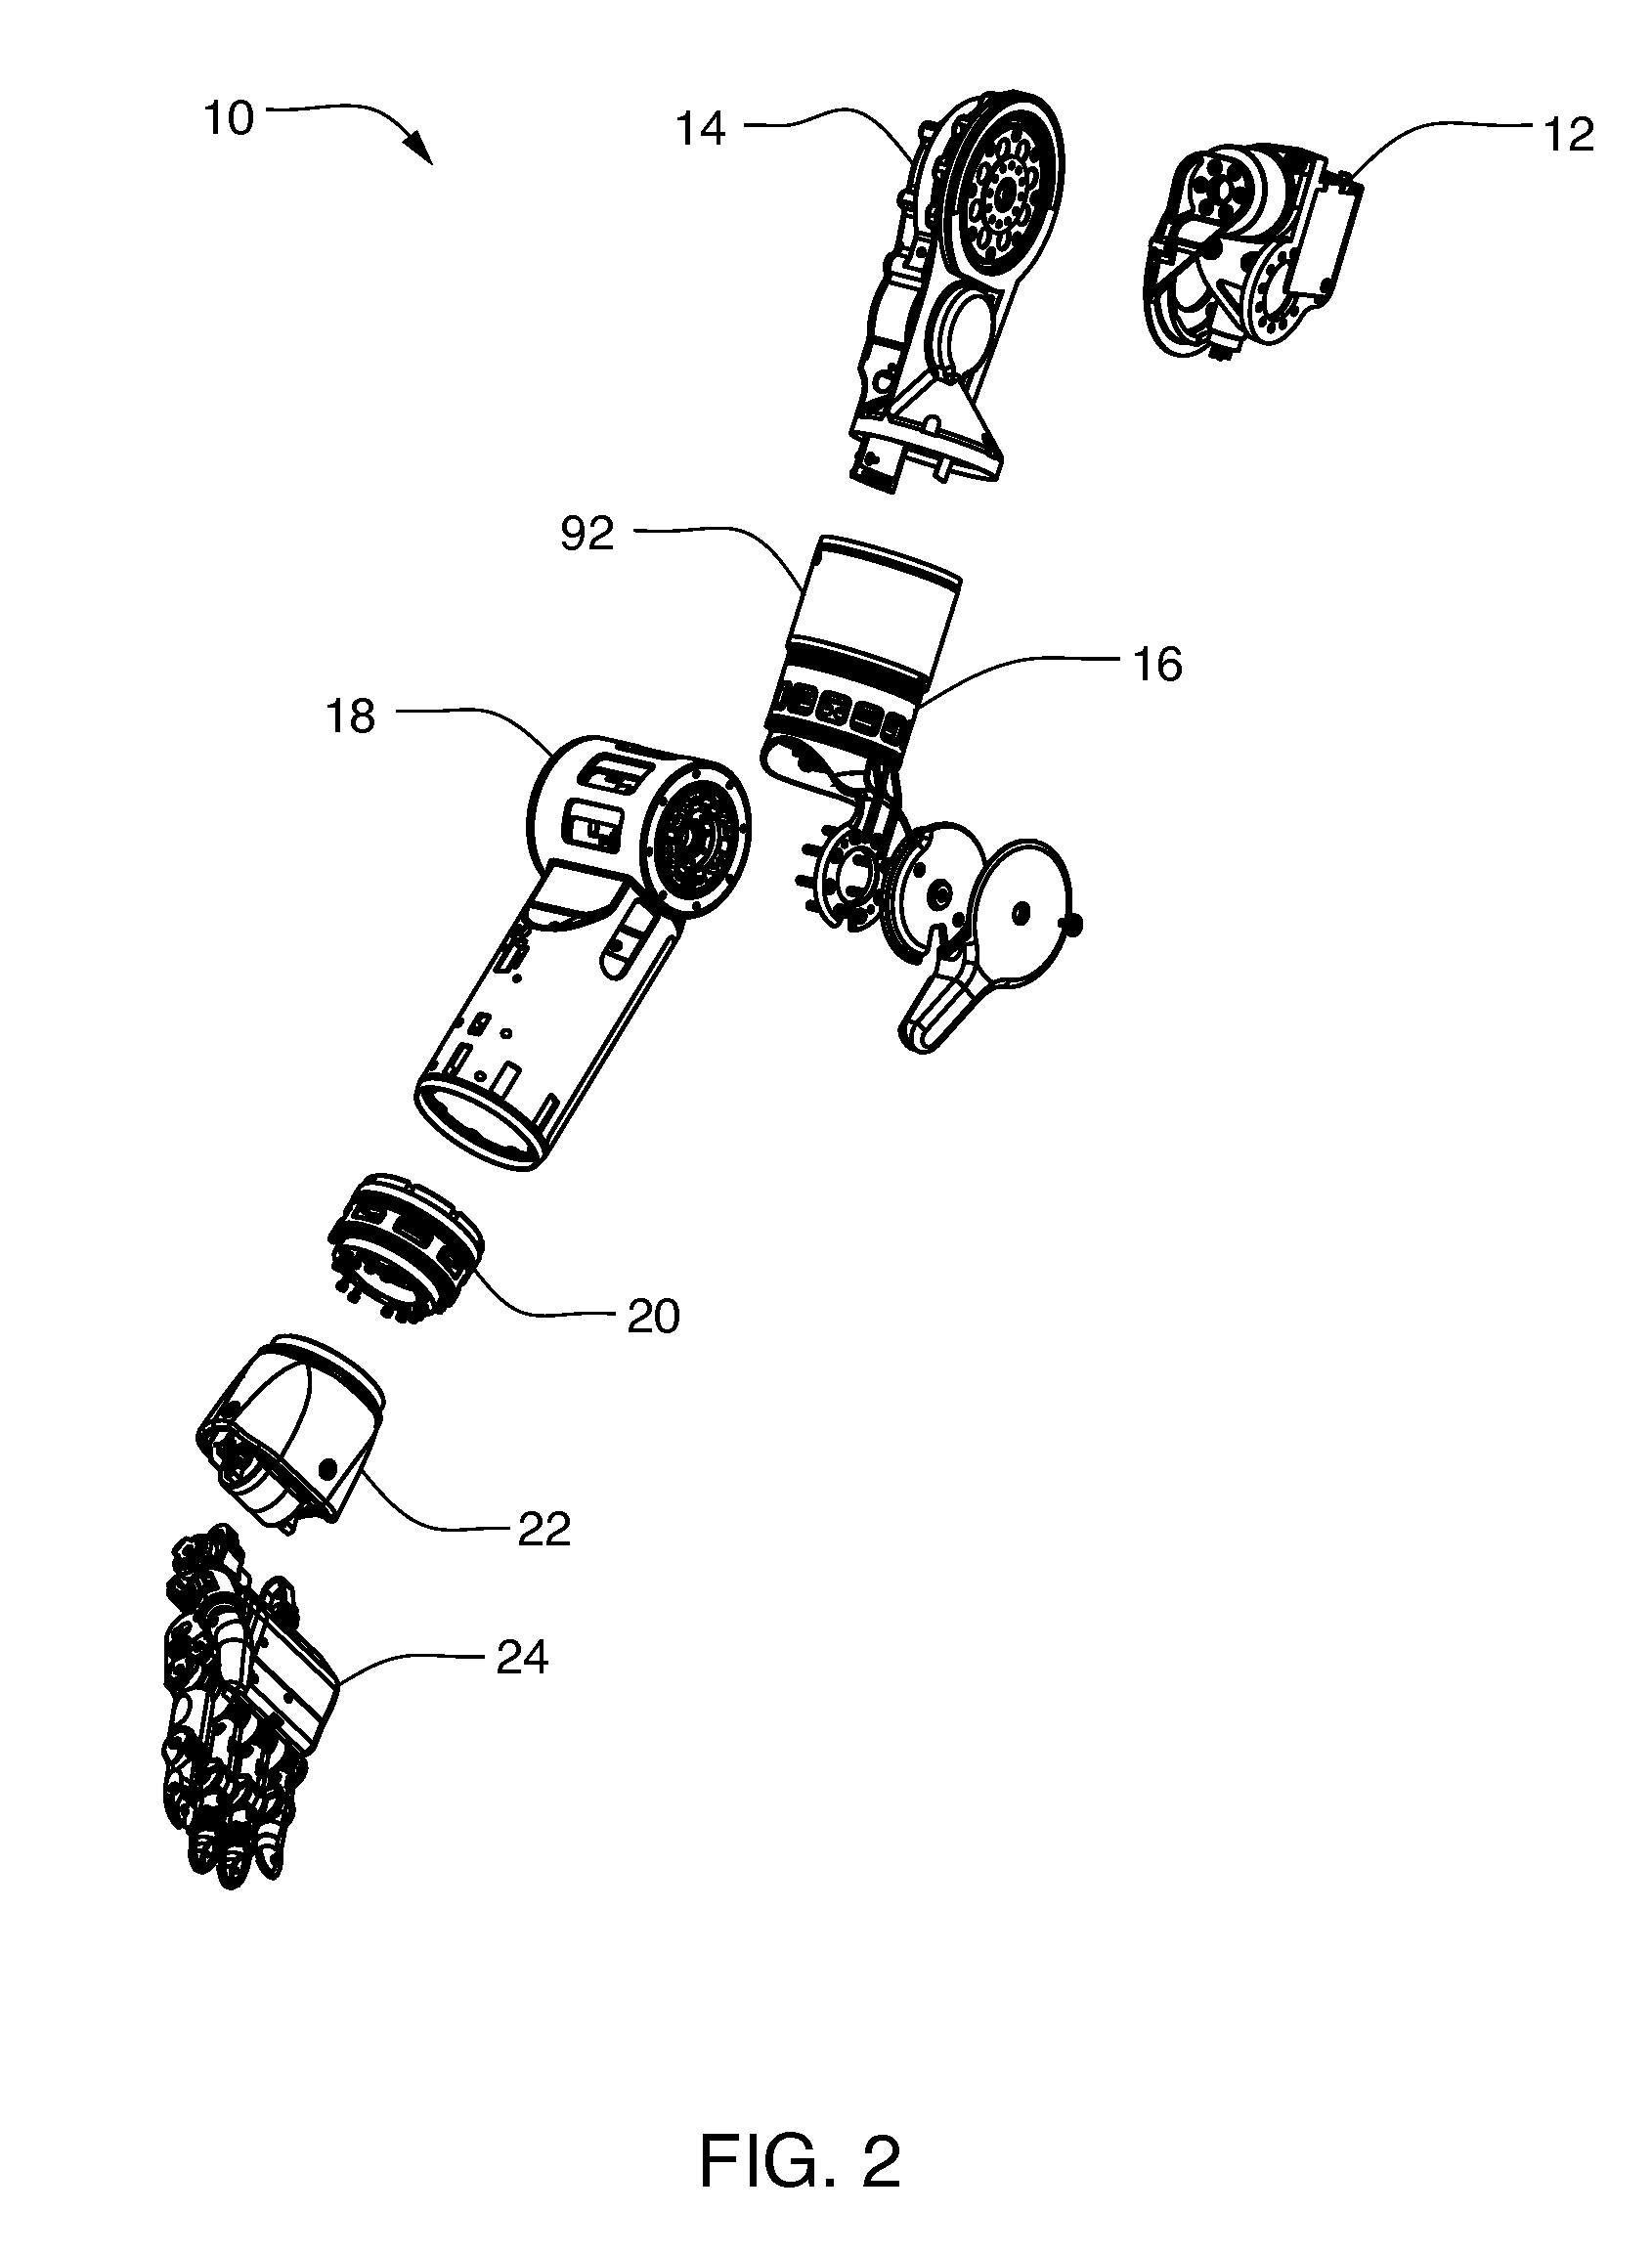 Arm prosthetic device